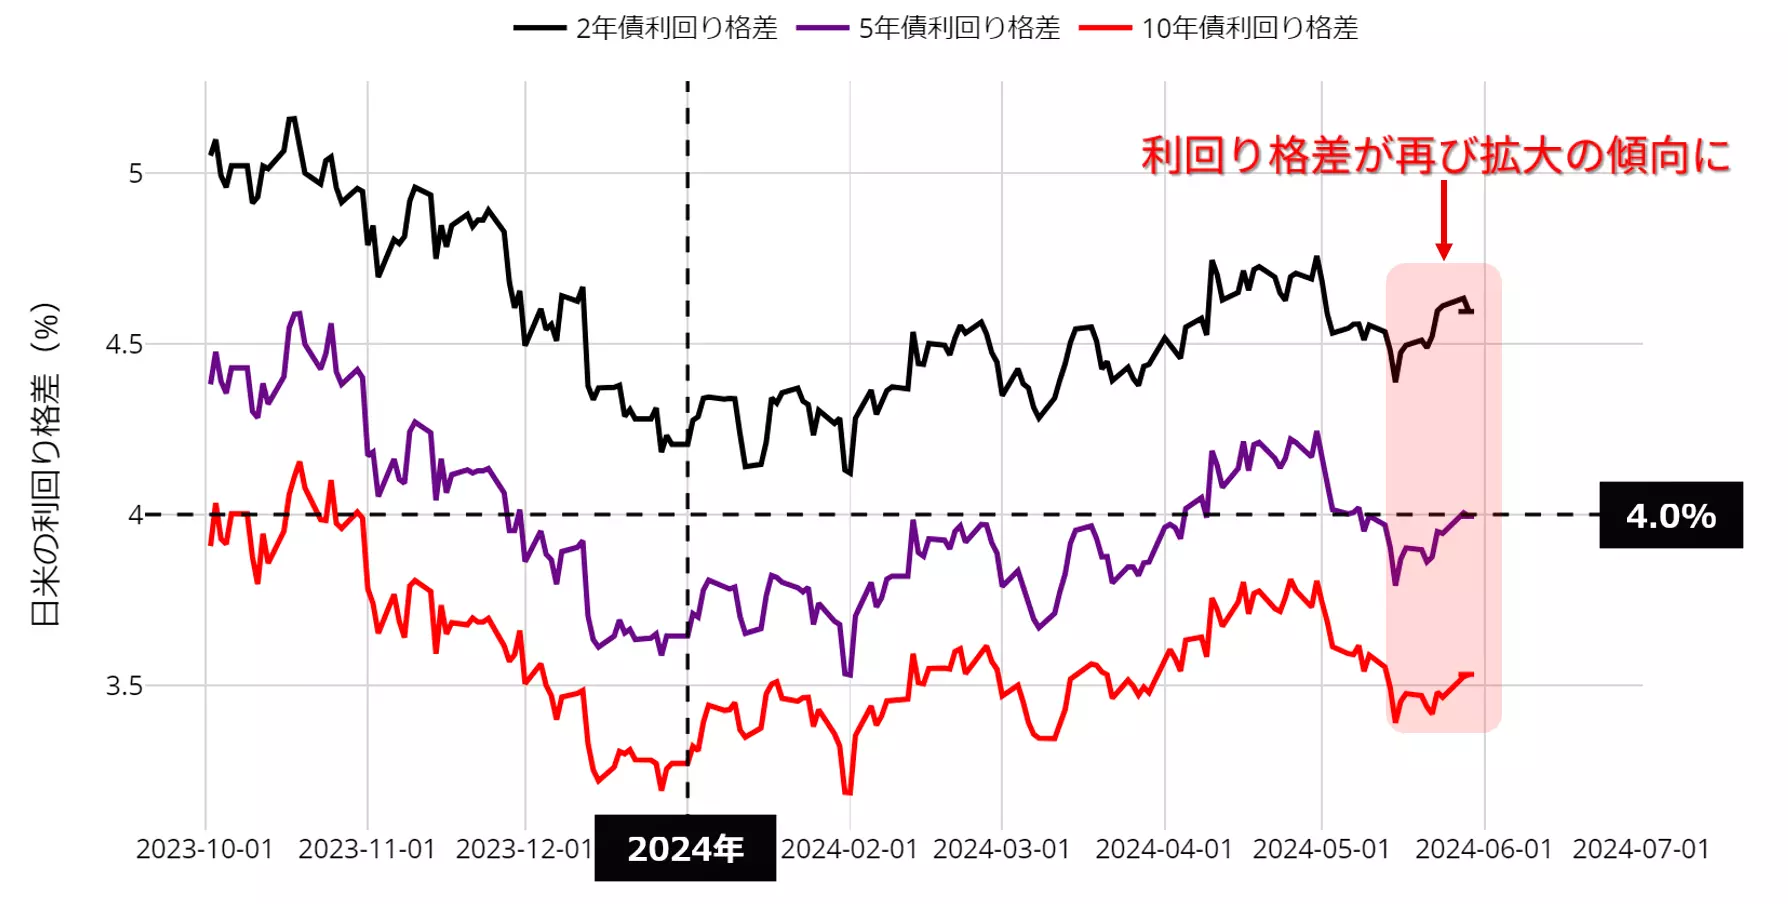 日米利回り格差の動向：23年10月以降